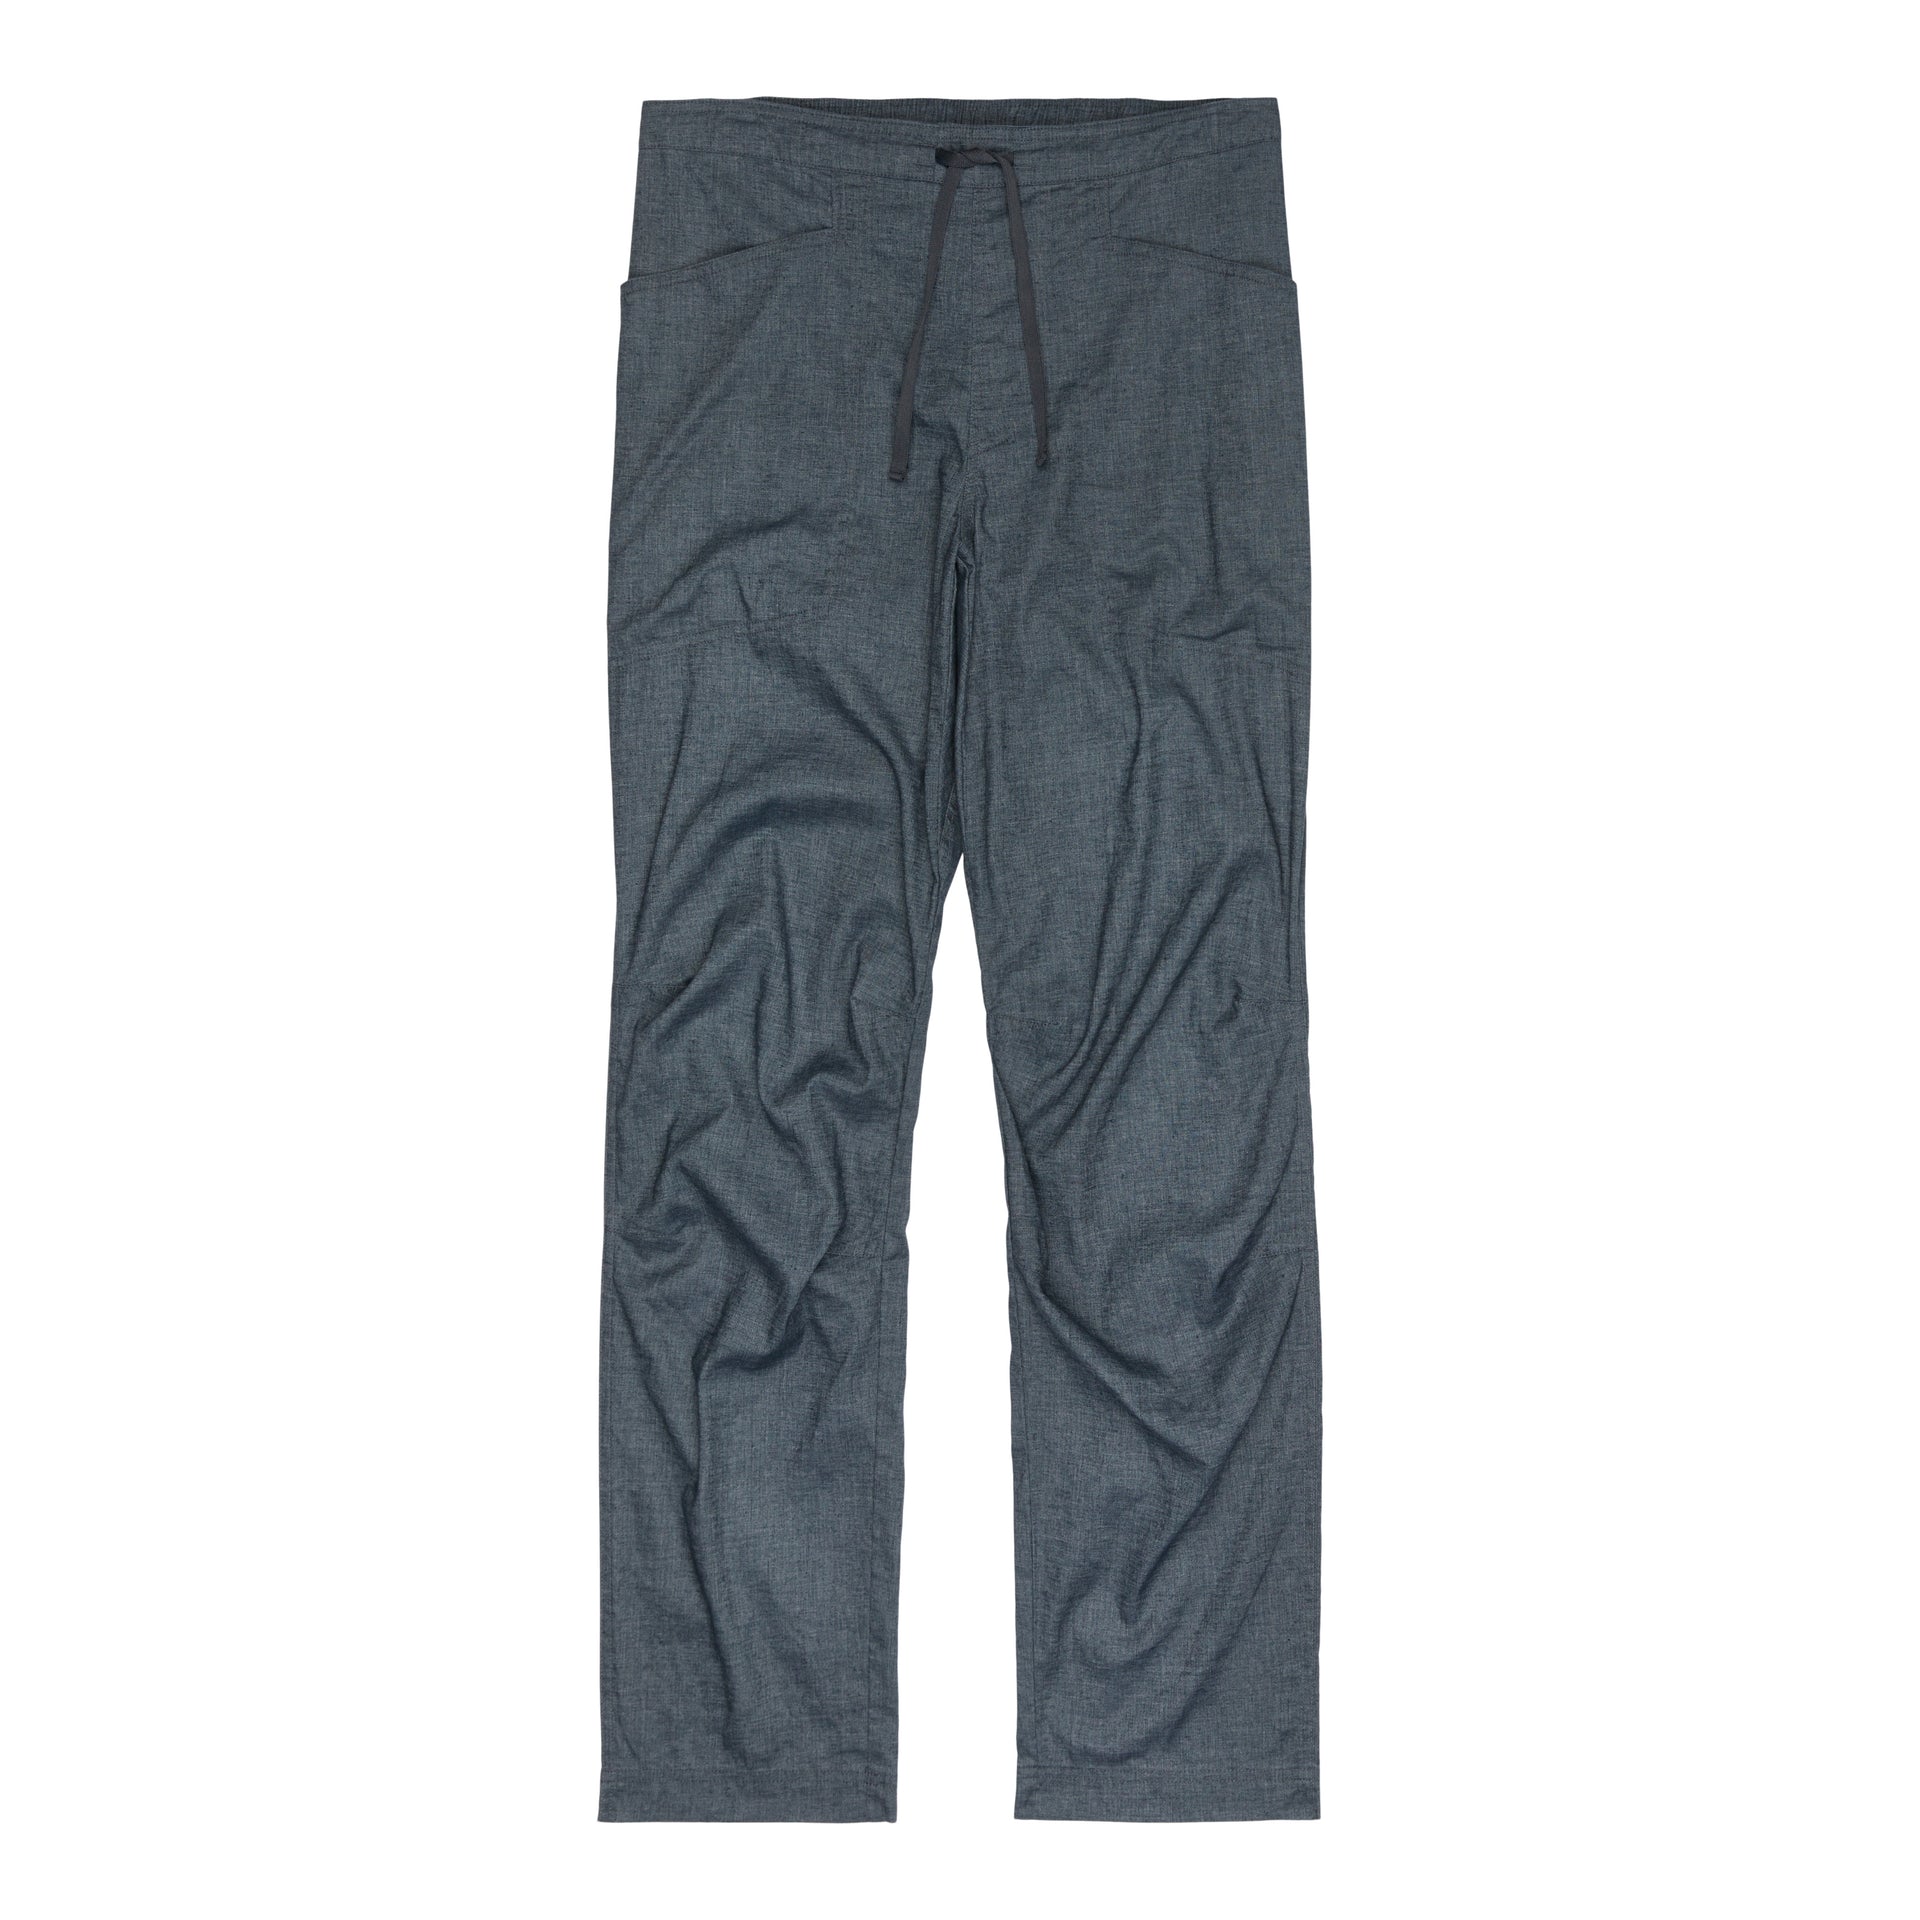 Patagonia Hampi Rock Pants - Casual trousers Men's, Buy online